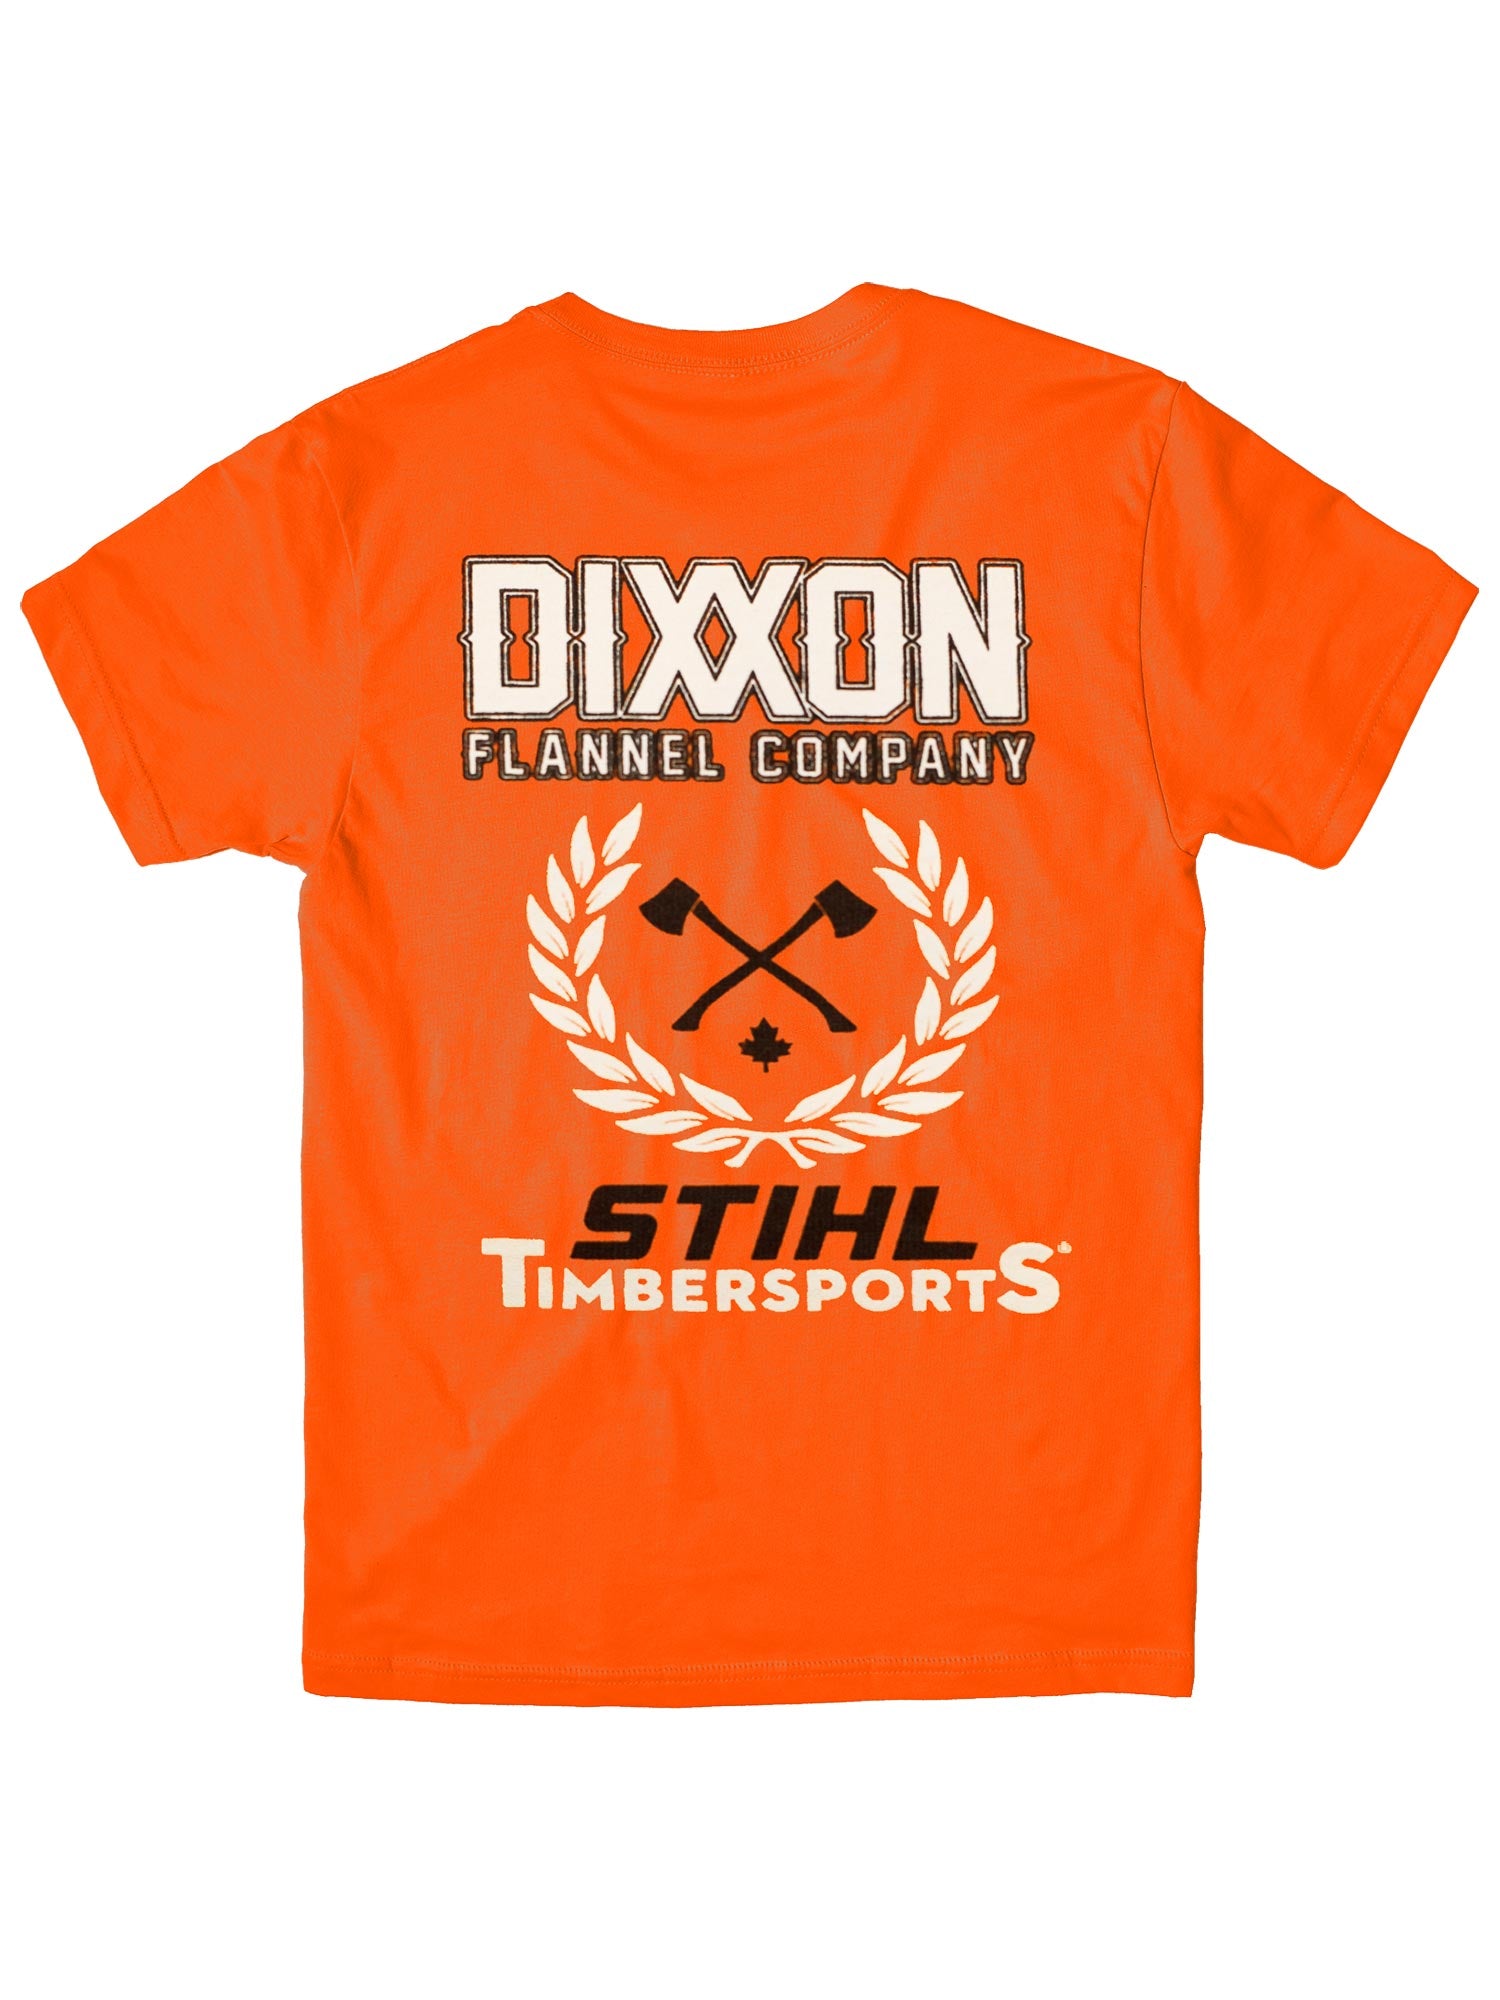 Dixxon x STIHL TIMBERSPORTS Shirt